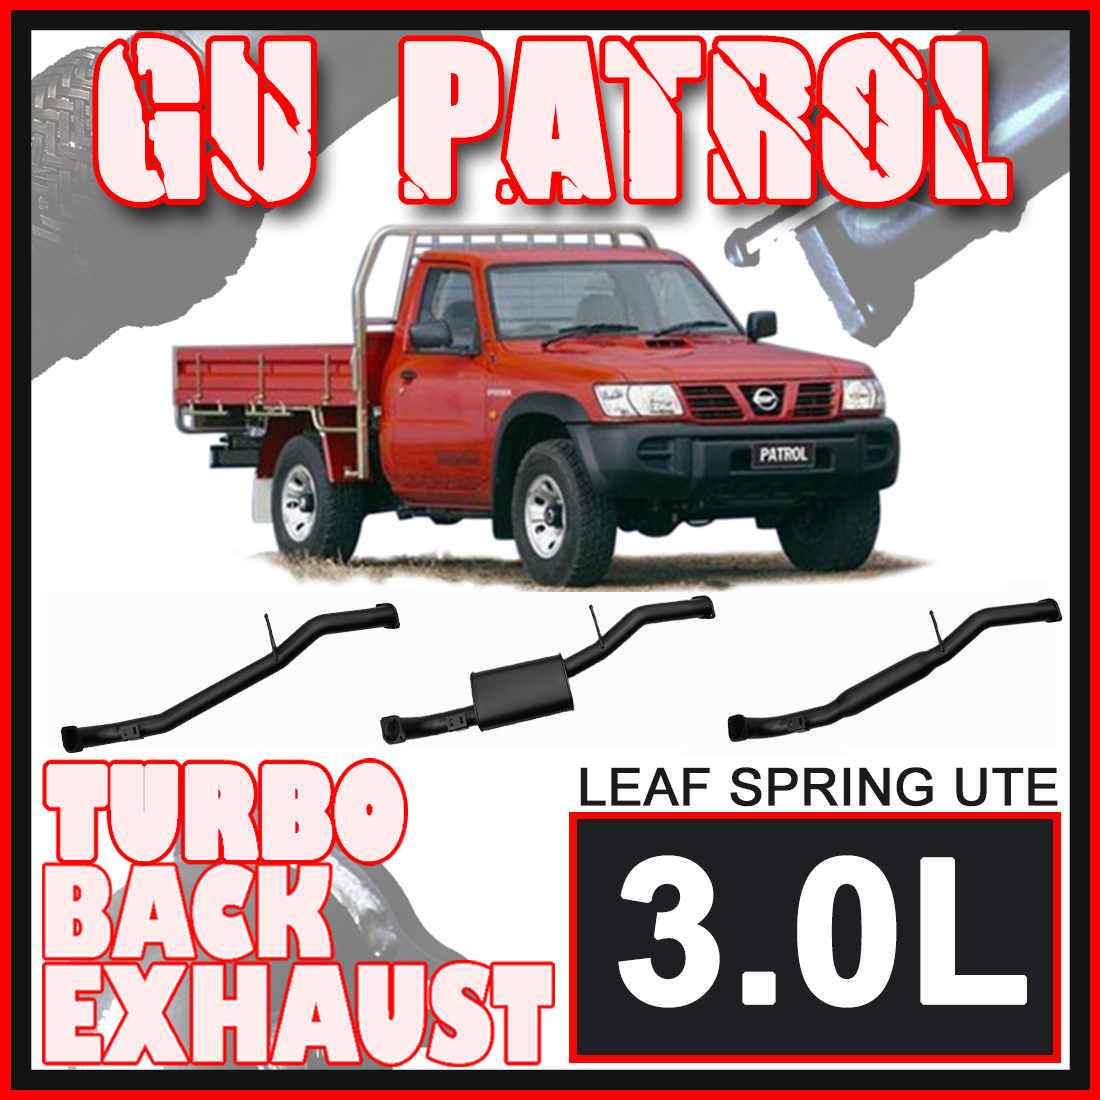 Nissan Patrol GU Leaf Spring Ute 3L Ignite Exhaust image